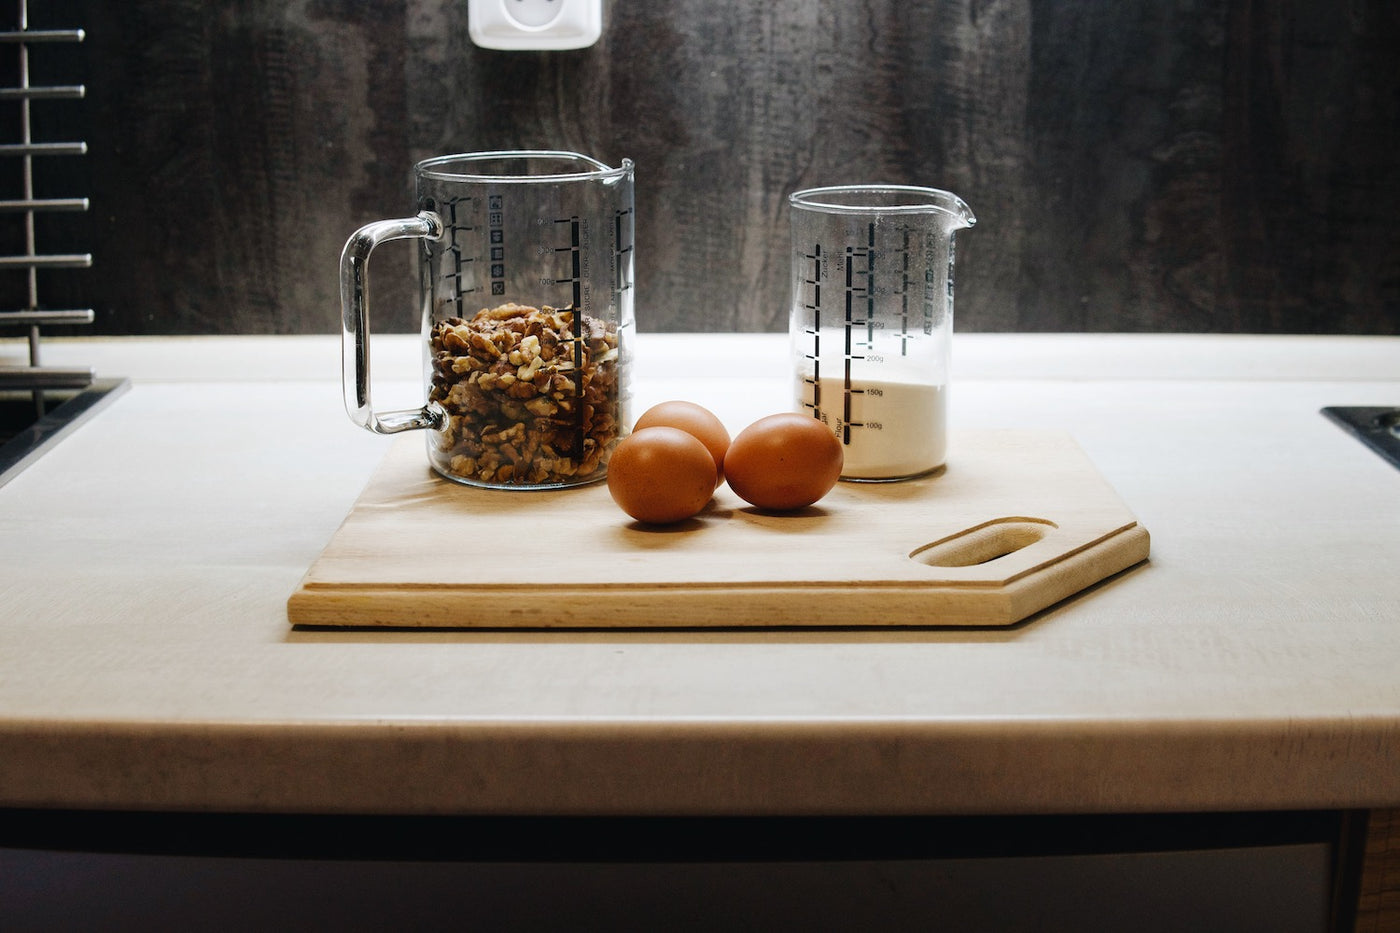 Skleněné kuchyňské odměrky Simax na kuchyňské lince s ořechy a vejci